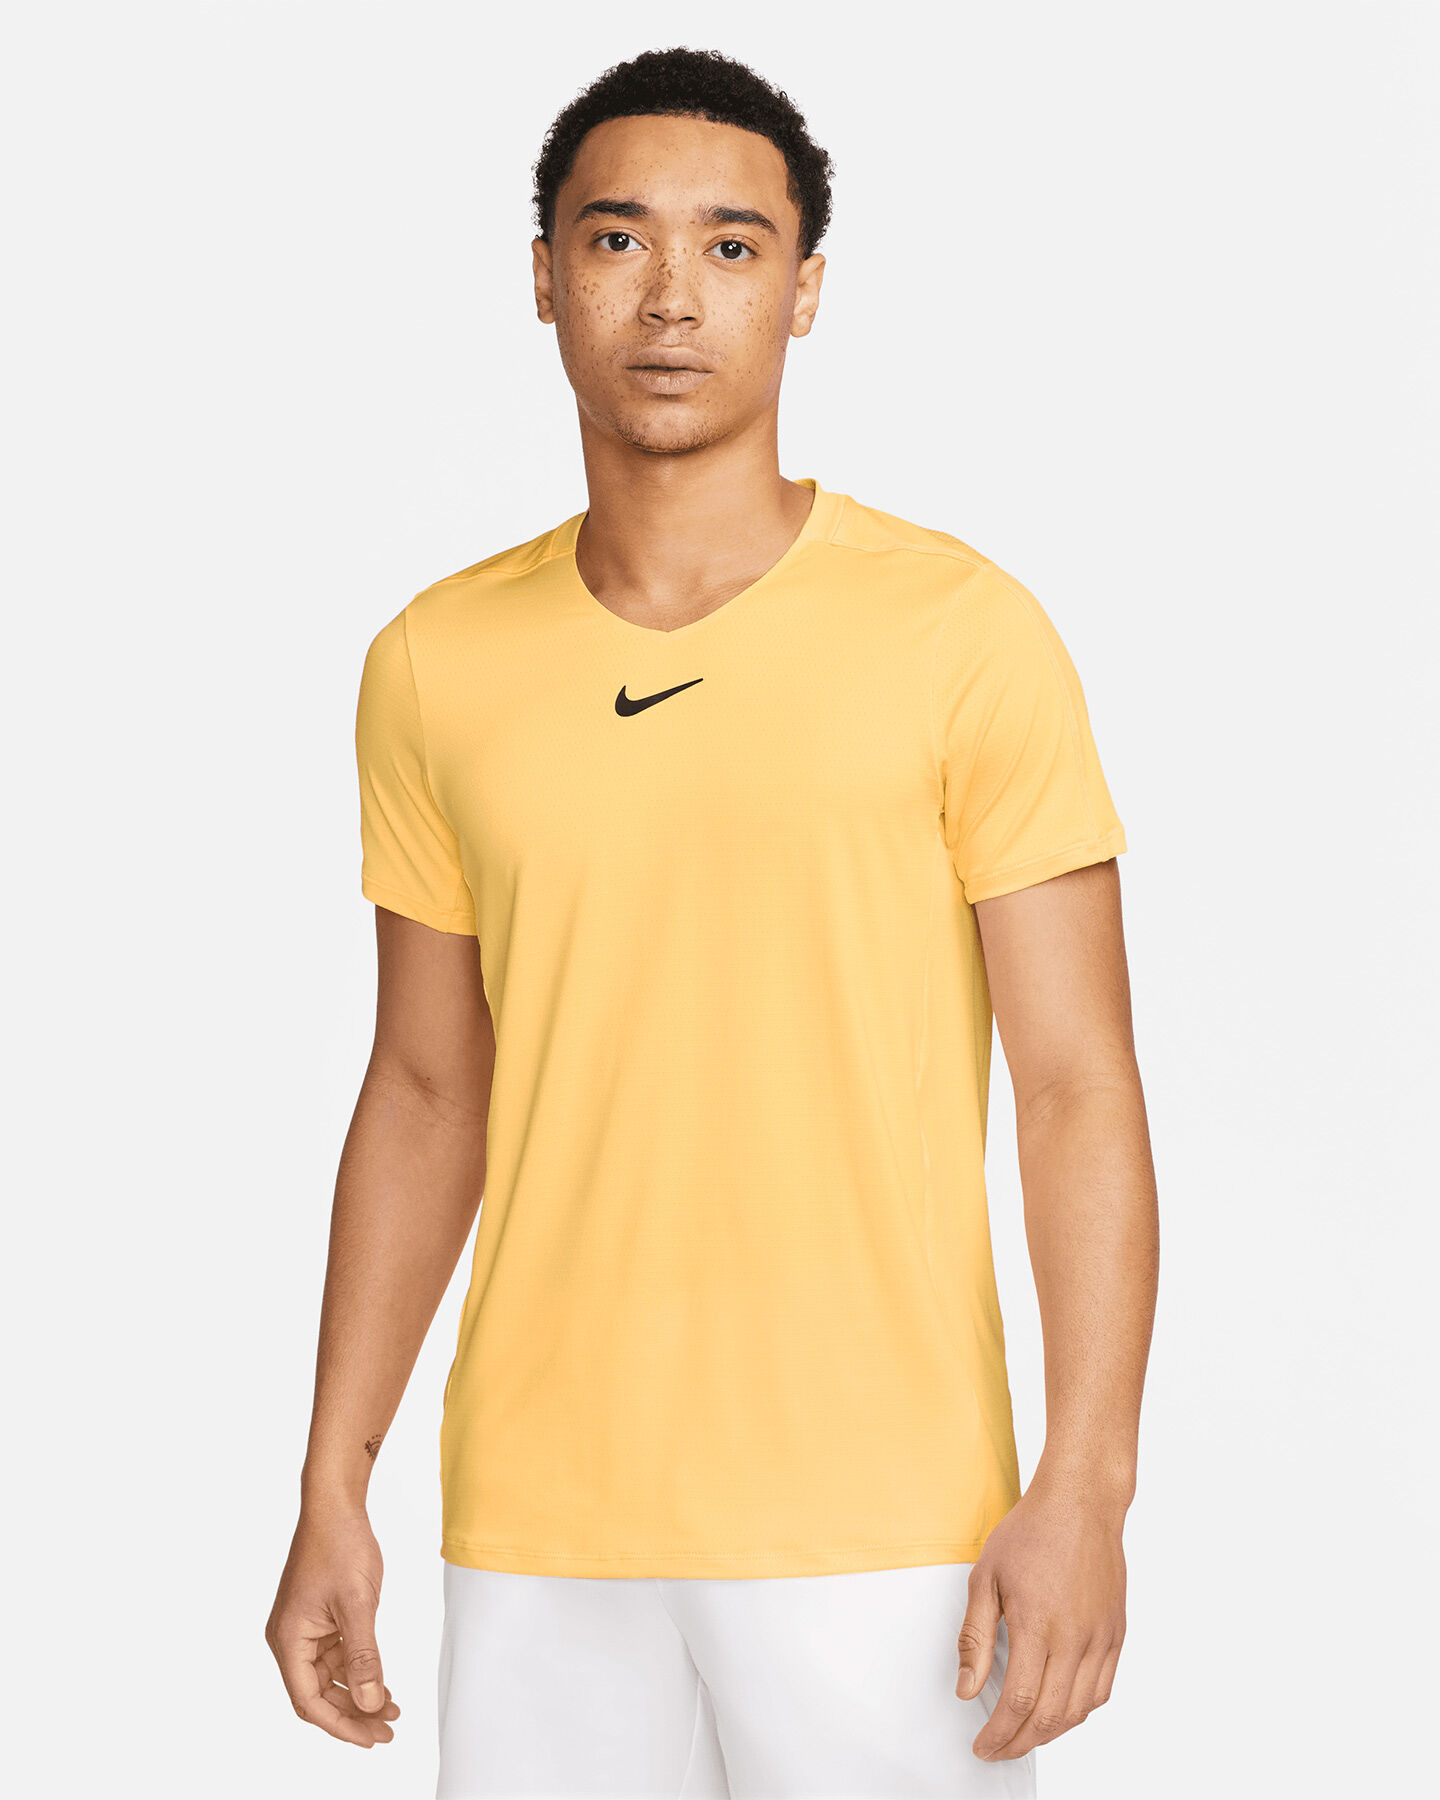  T-Shirt tennis NIKE DRI FIT ADVANTAGE M S5561566|848|XL scatto 0